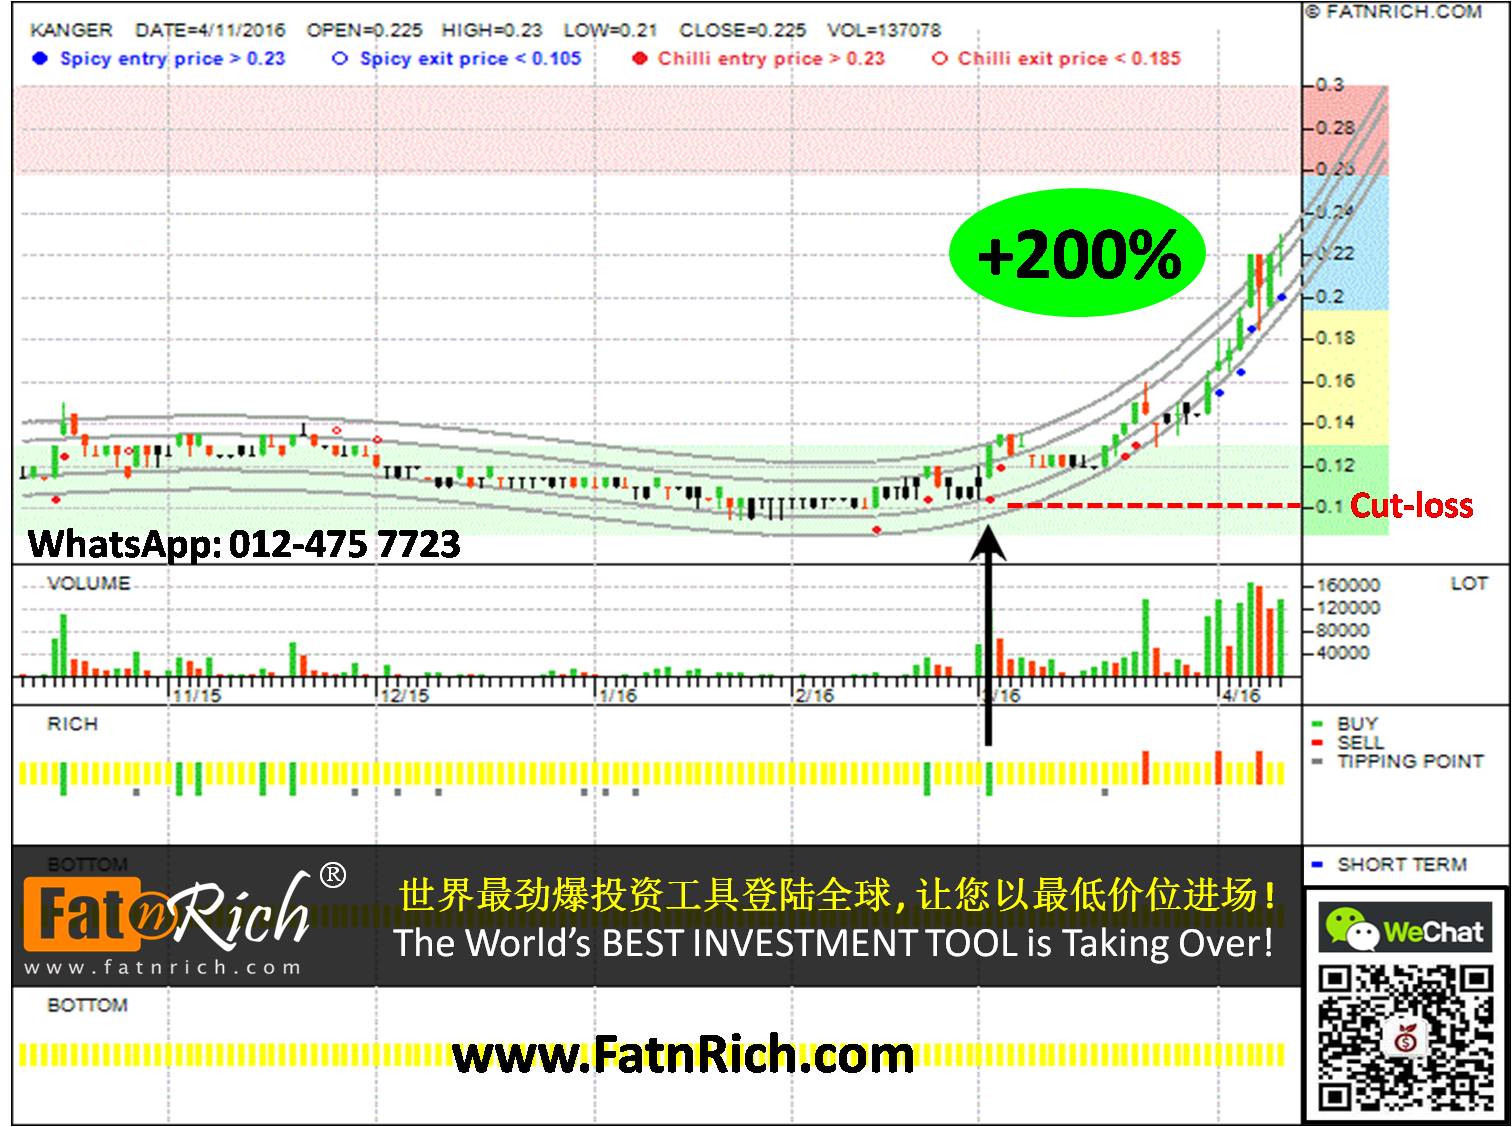 Malaysia stock Kanger International Bhd (KANGER 0170)